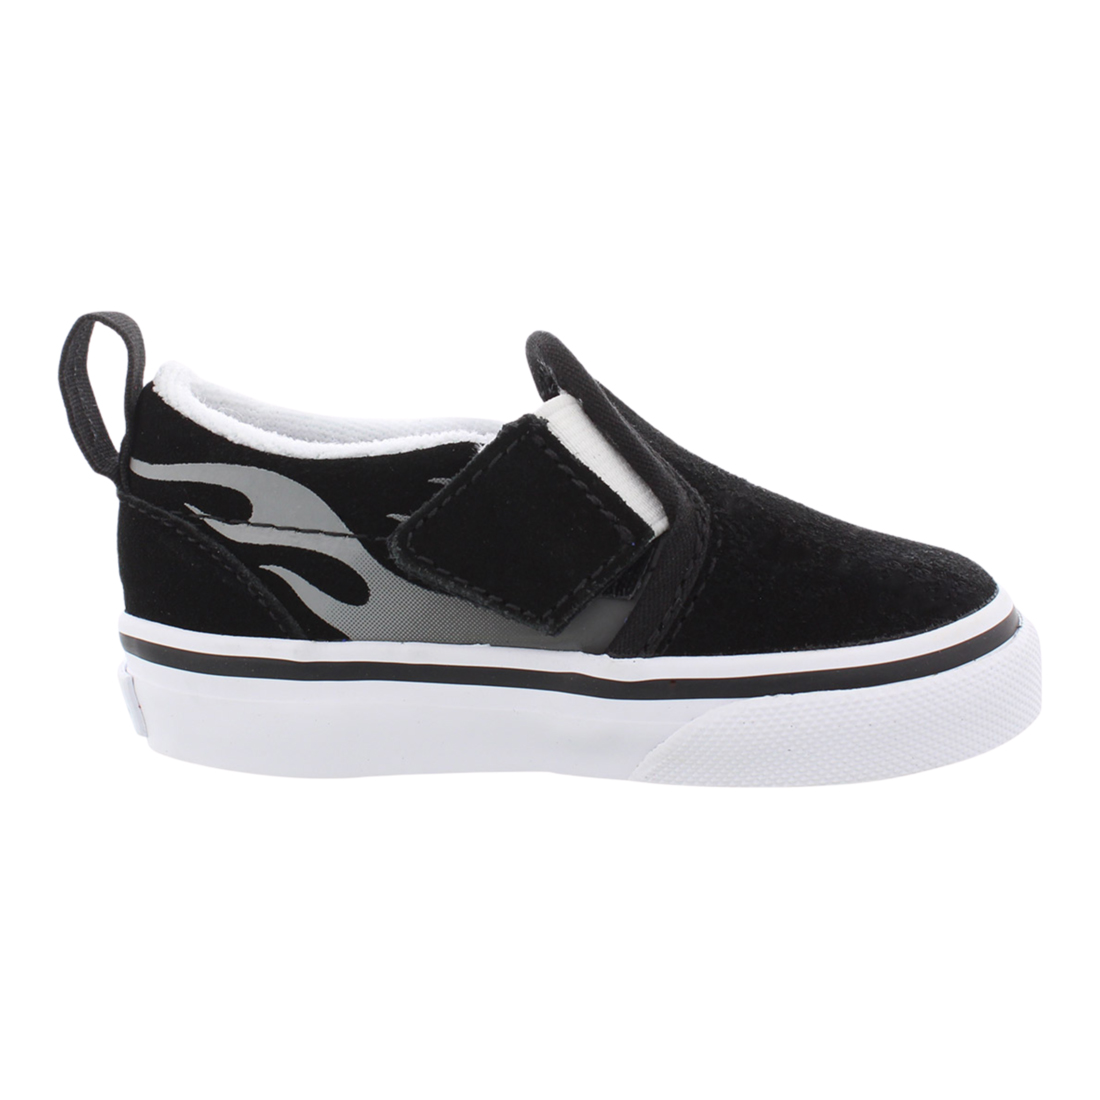 Vans Slip-On V Boys/Toddler shoe size 4.5 M Toddler   Athletics VN0A3488WKJ ((Suede Flame) Black/True White) - image 1 of 1